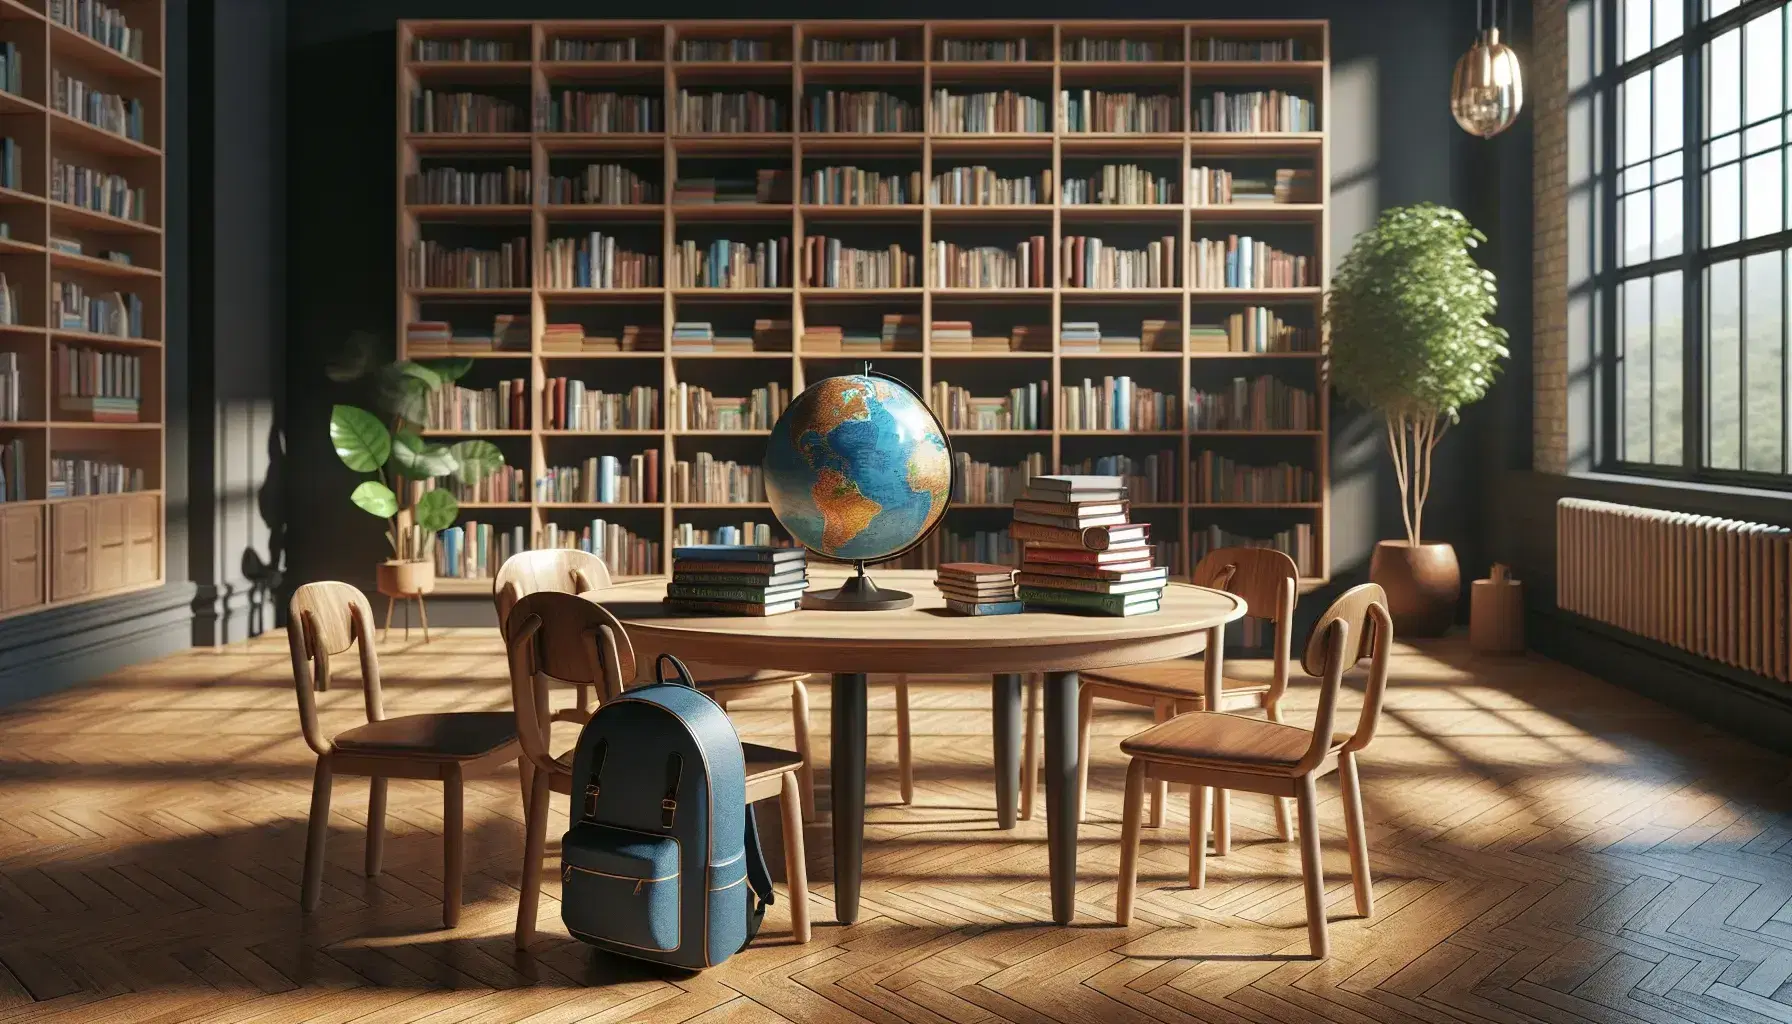 Biblioteca escolar iluminada con estantes de madera y libros variados, mesa con globo terráqueo y mochila azul, luz natural y planta interior.